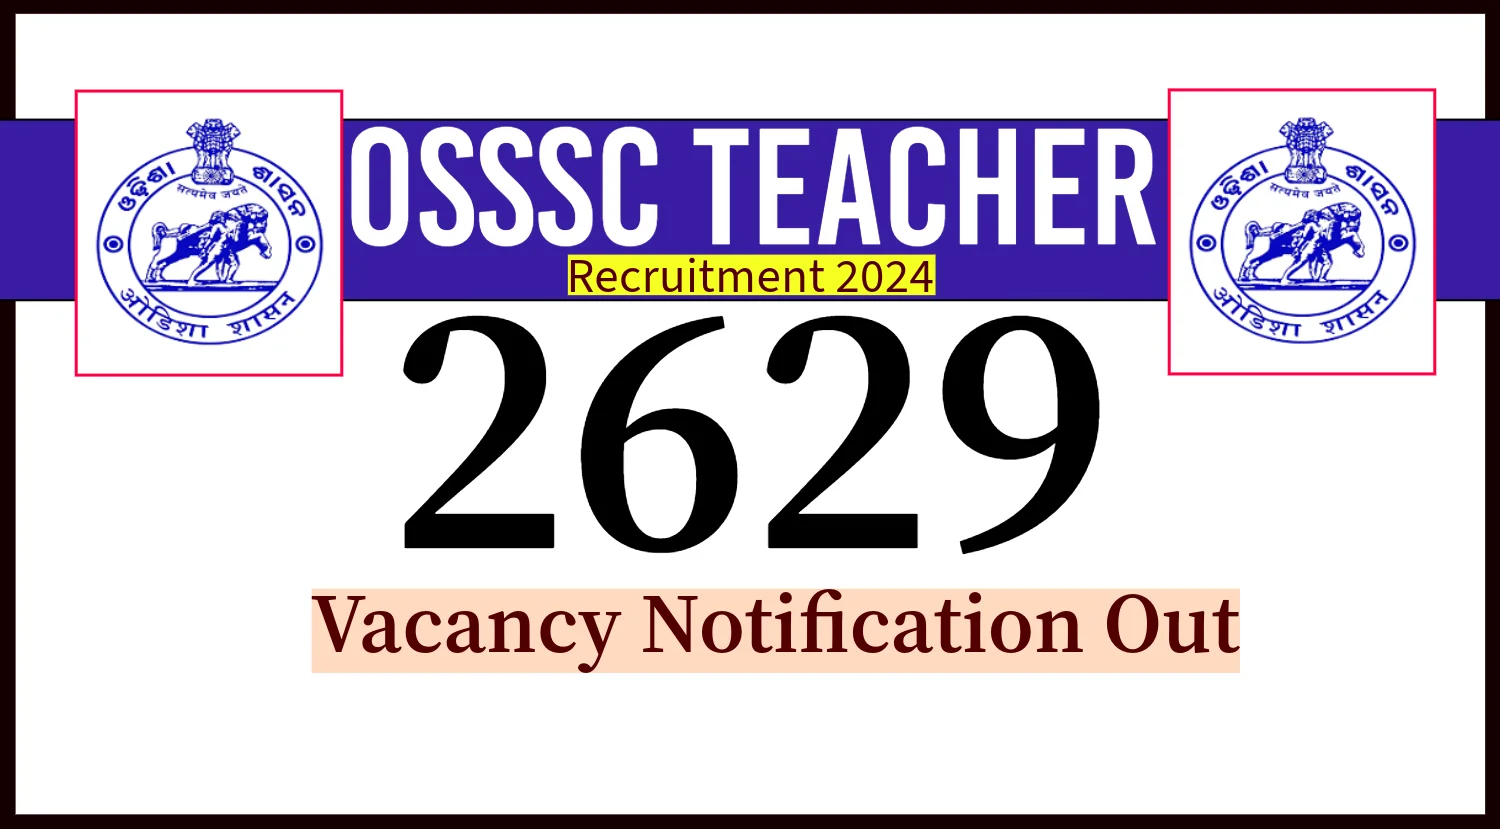 OSSSC Teacher Recruitment 2024 Notification for 2629 Vacancy